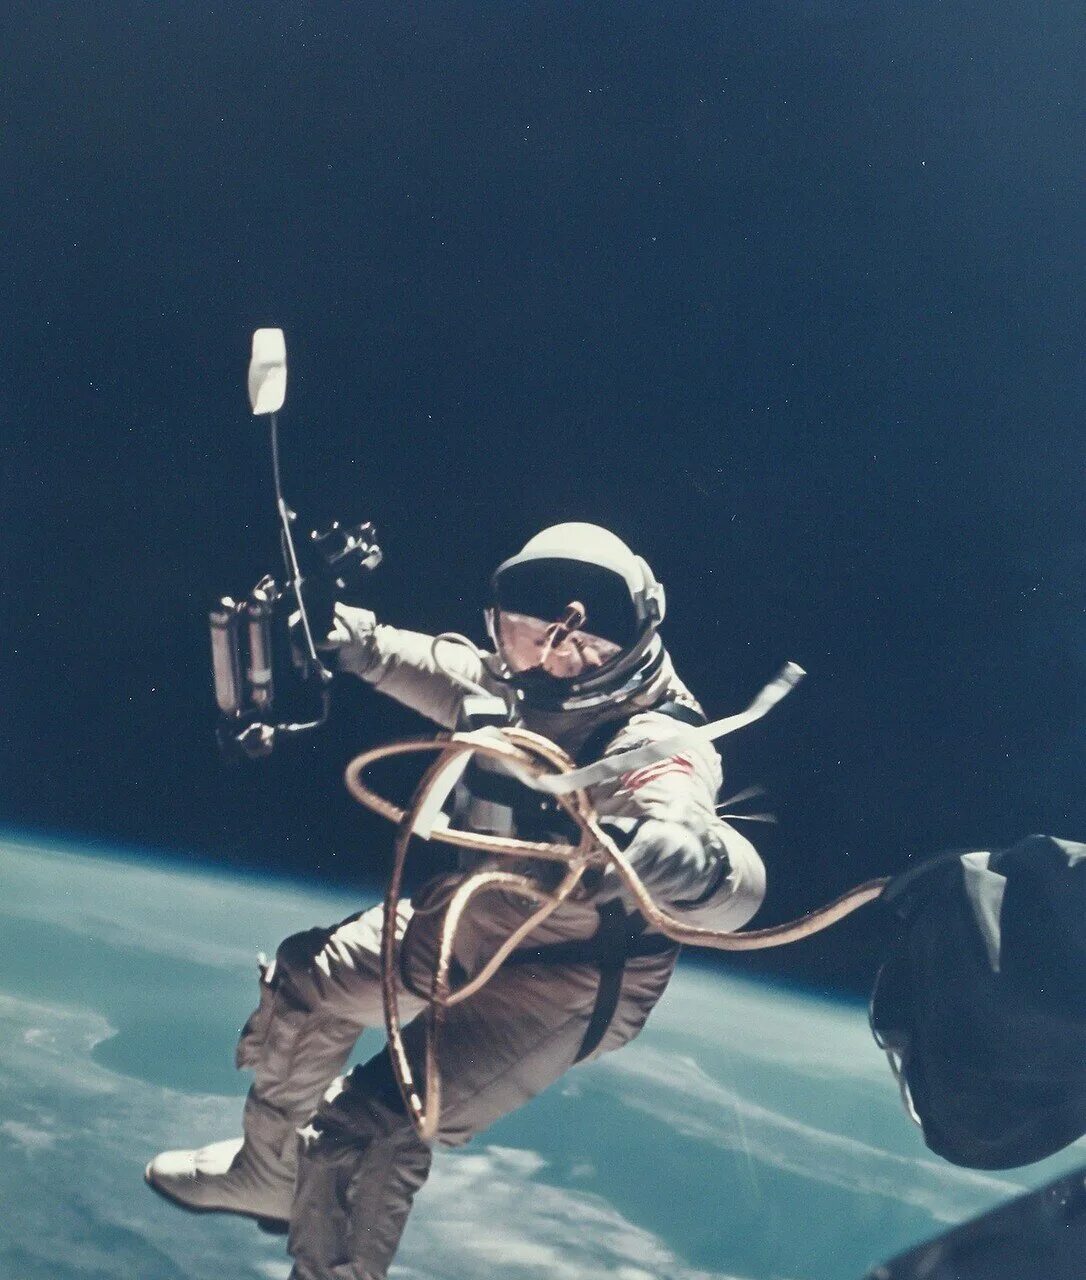 Первый человек побывавший в открытом космосе. Космонавт Леонов в открытом космосе. Первый выход в космос Леонова.